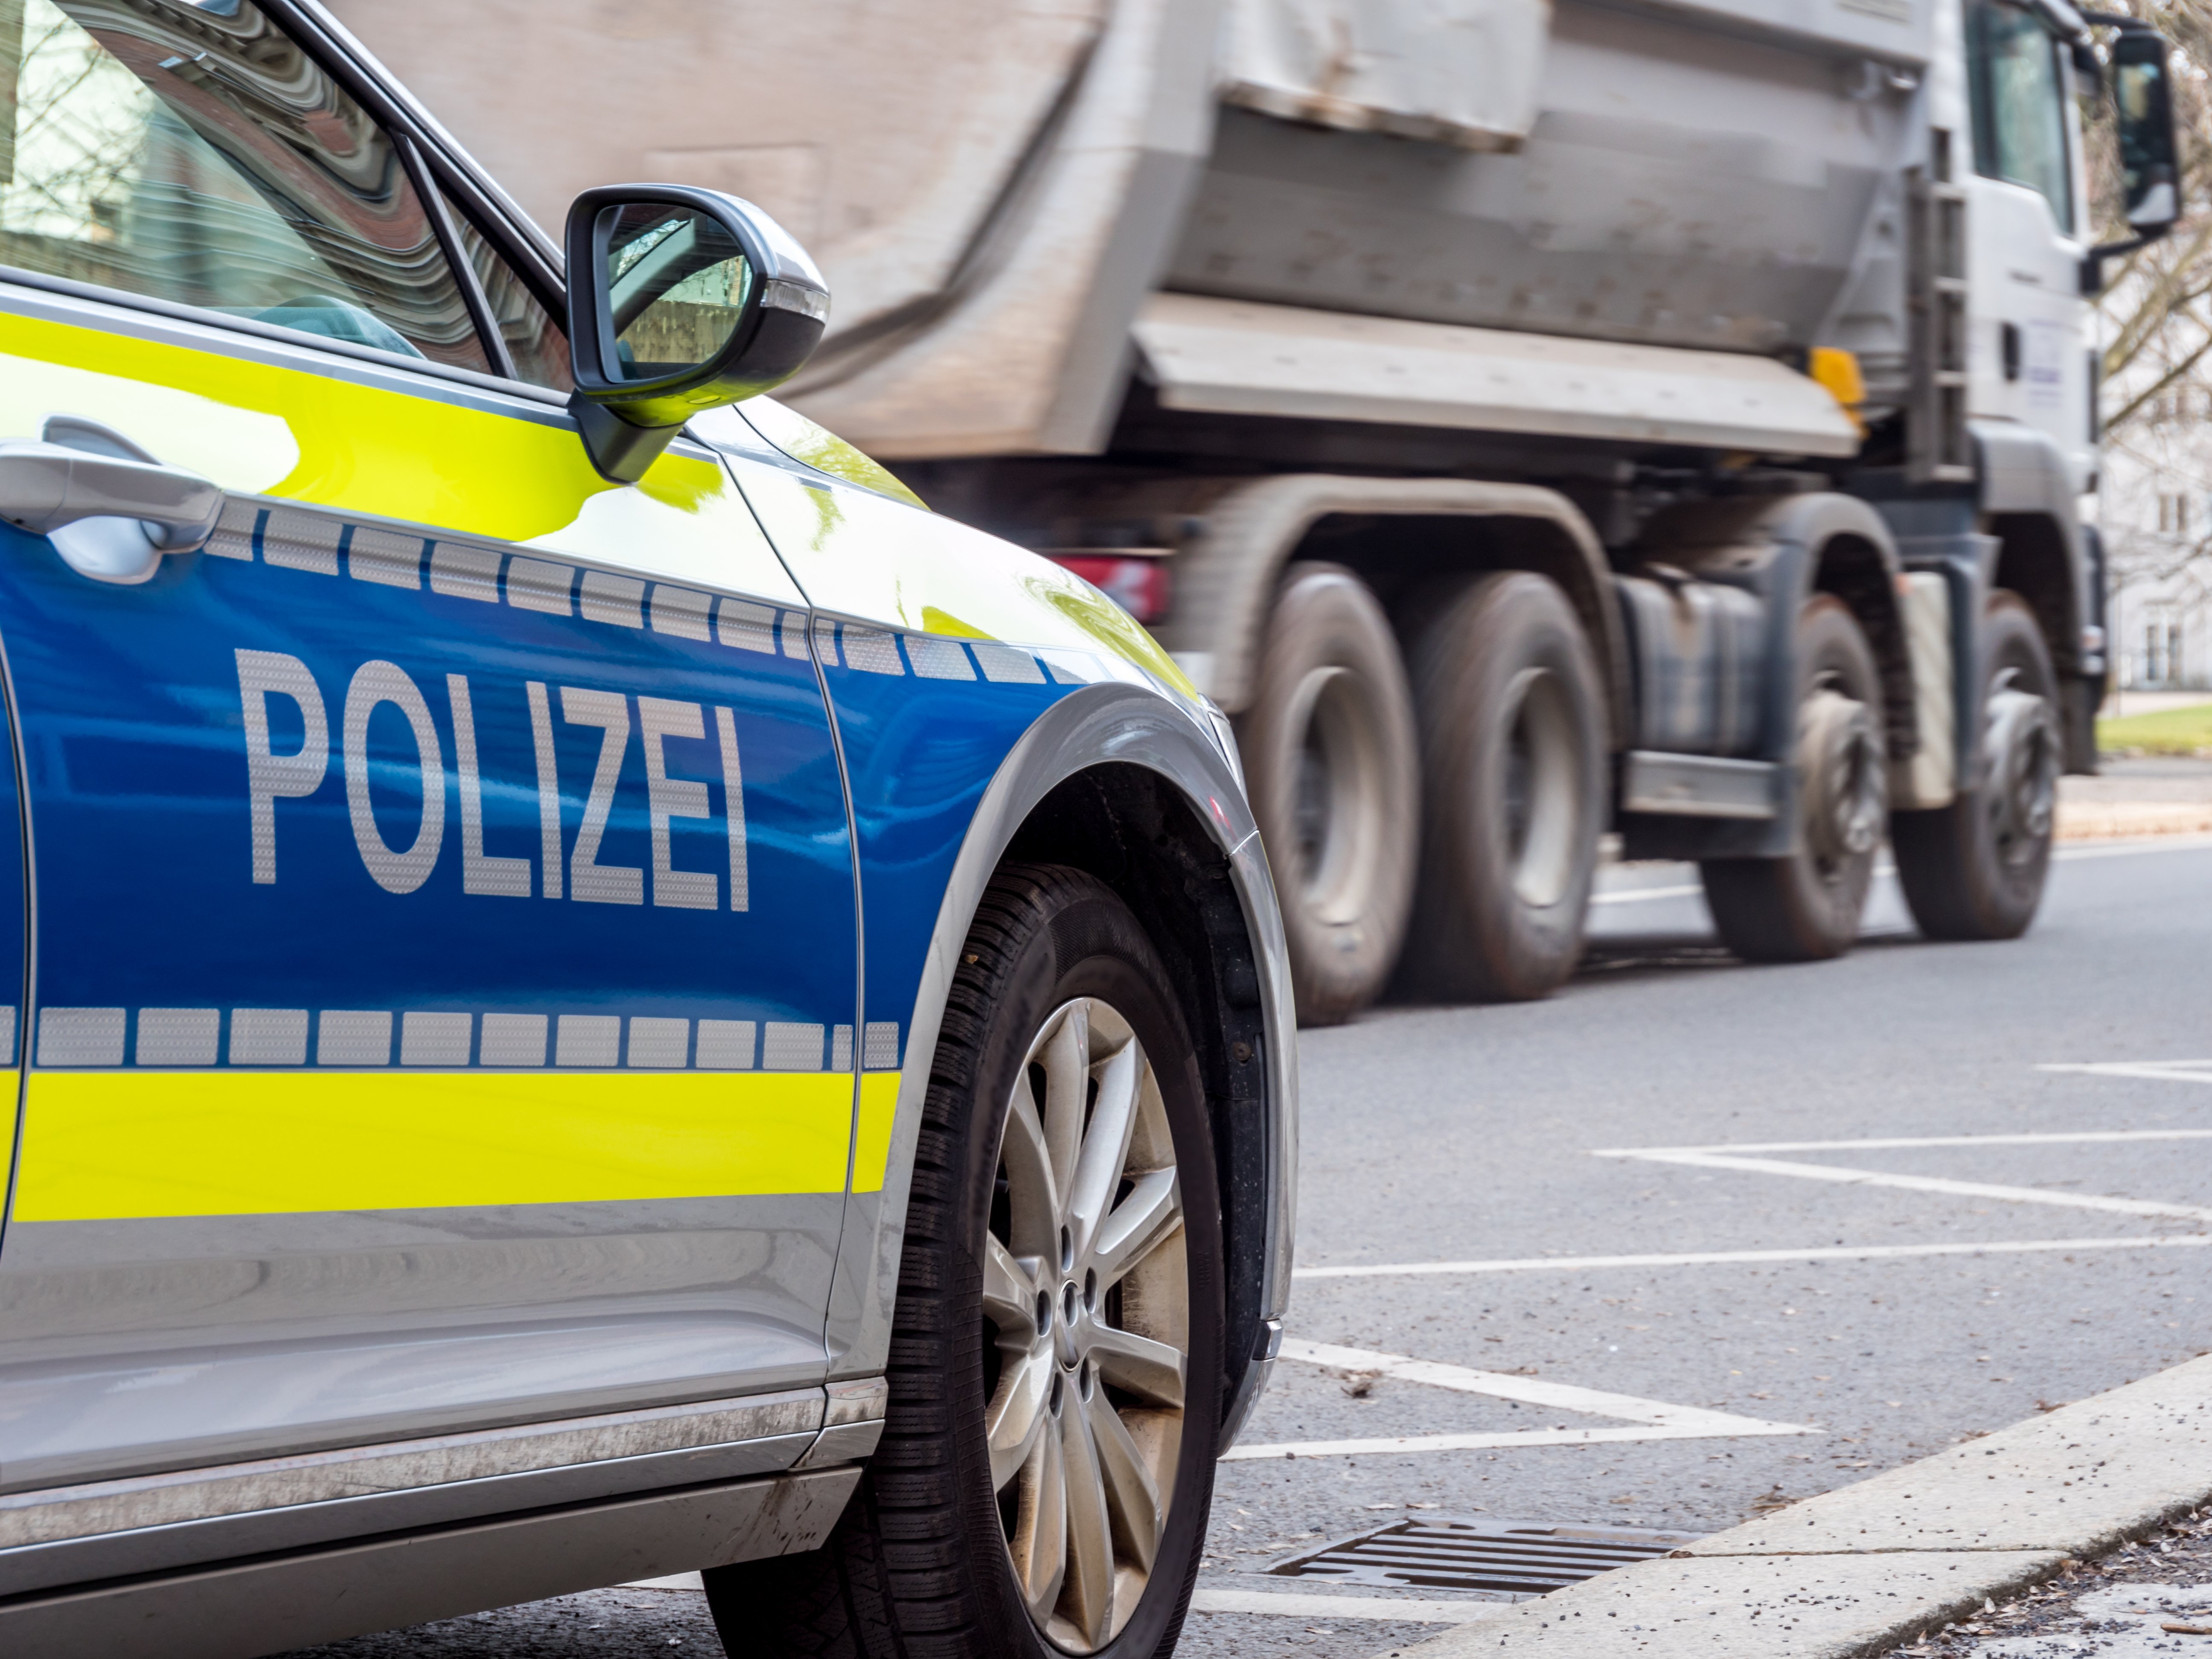 Fahrzeugkontrolle der deutschen Polizei in der Stadt | Quelle: Shutterstock